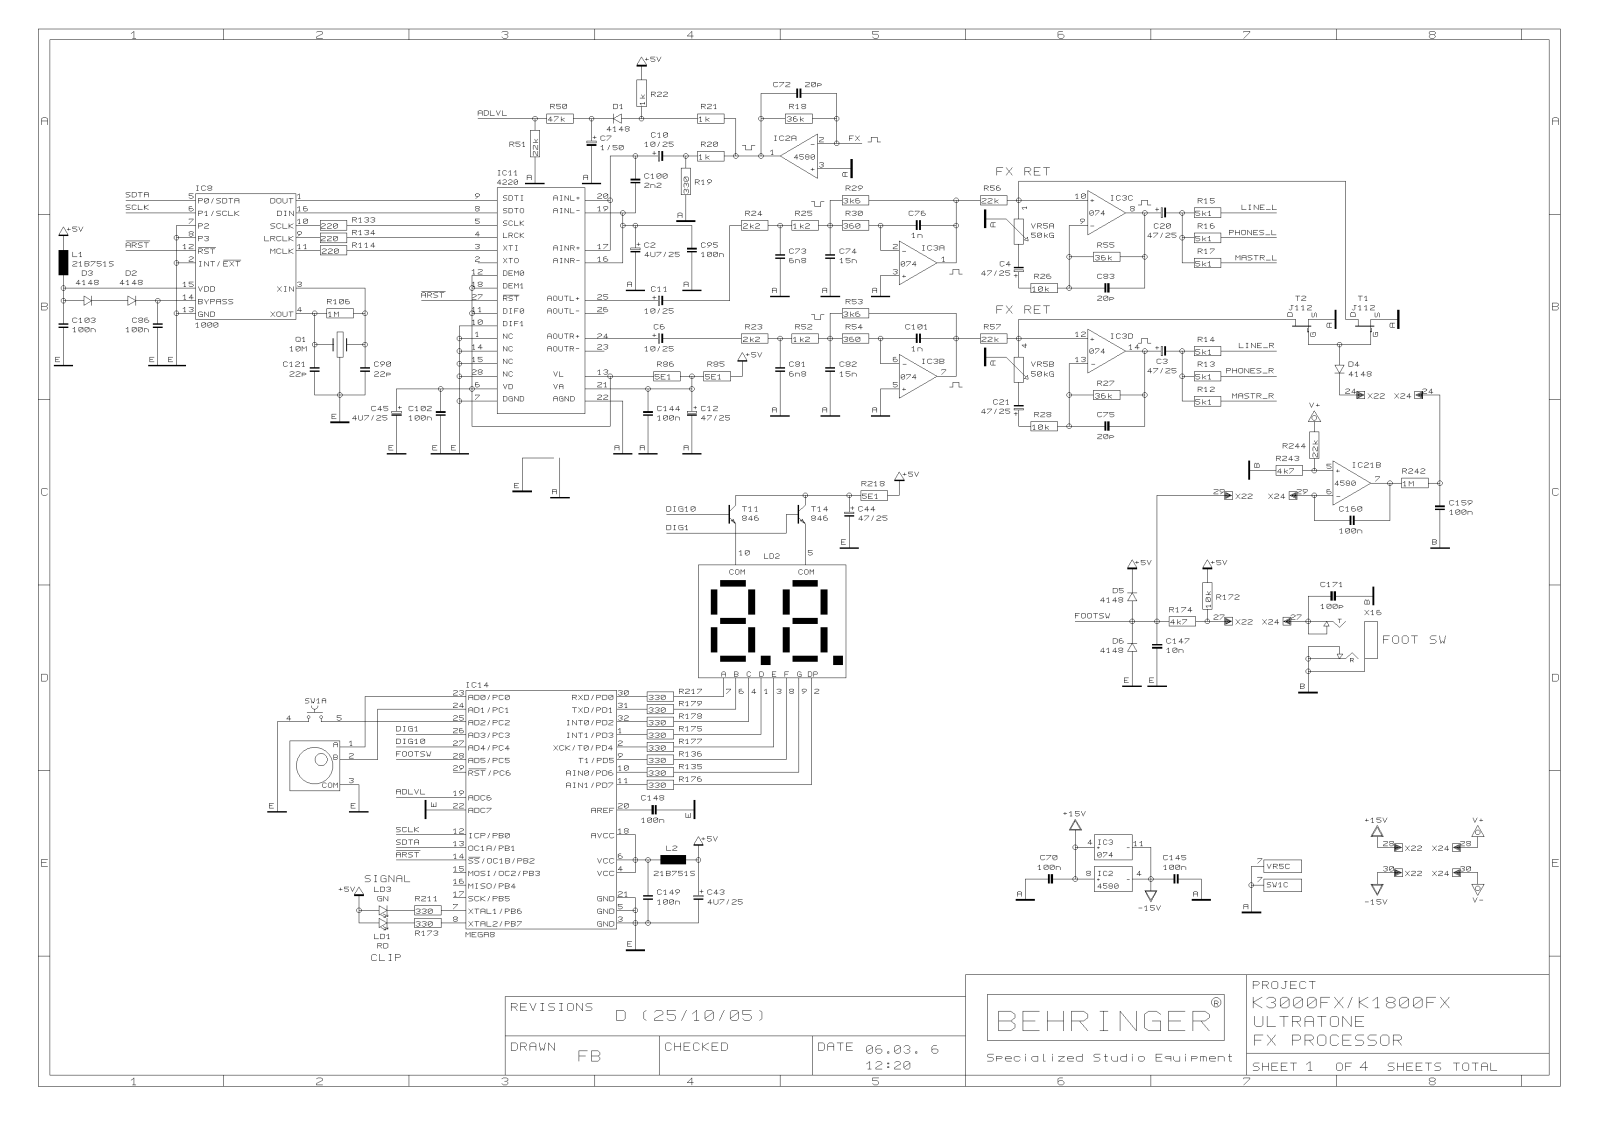 Behringer k3000fx Schematic